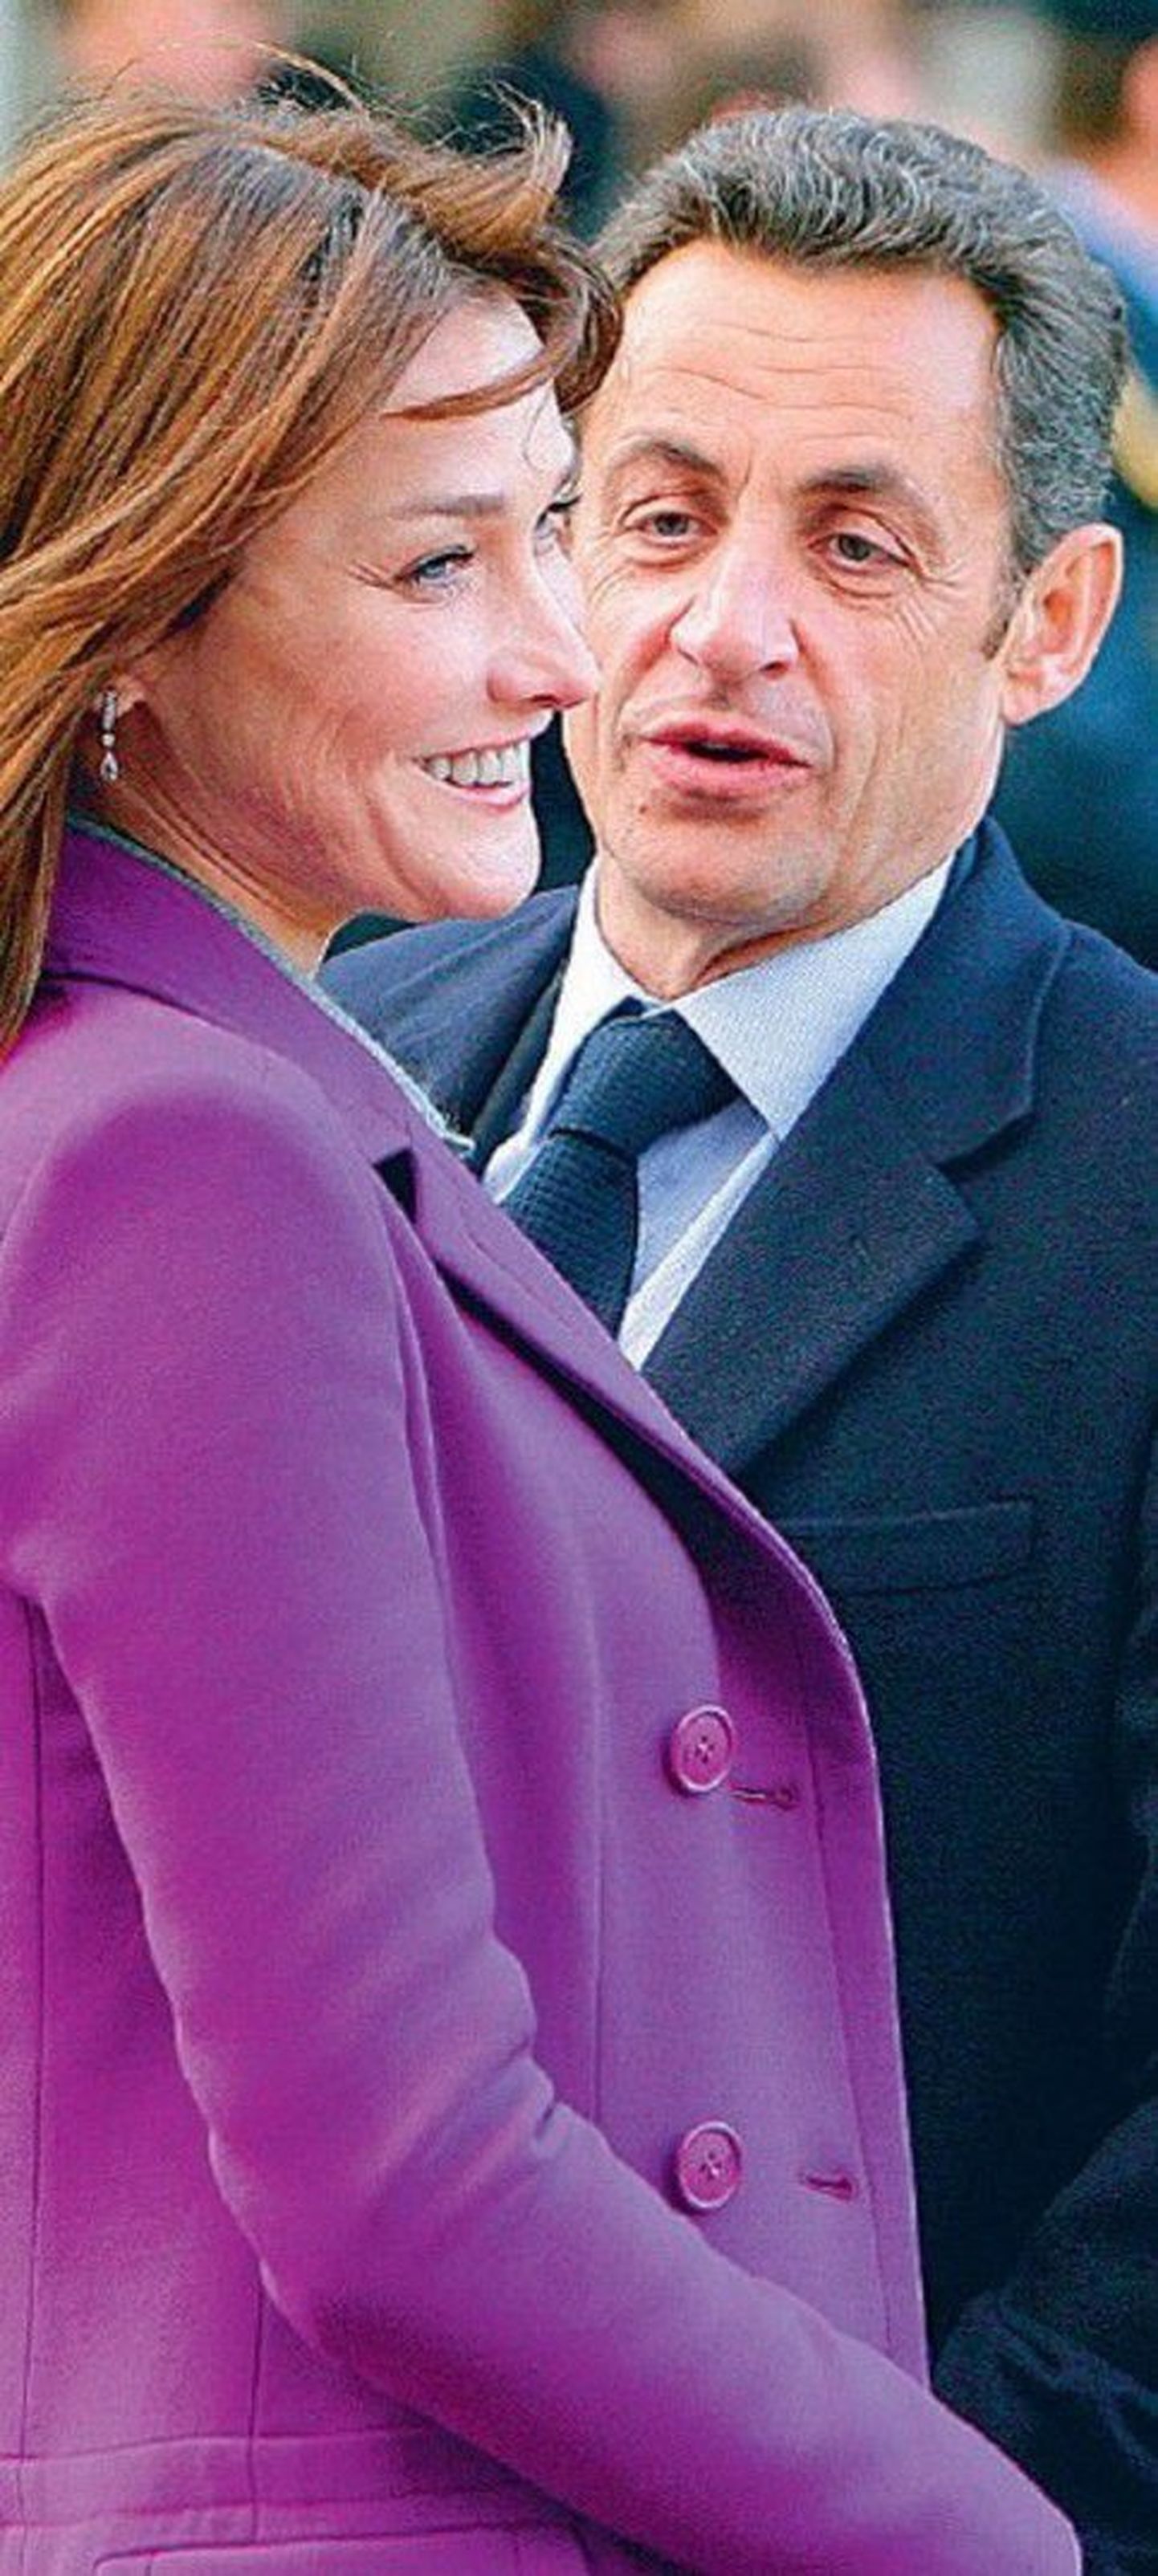 Prantsuse presidendipaar jätab enamvähem
tsiviliseeritud inimeste mulje.